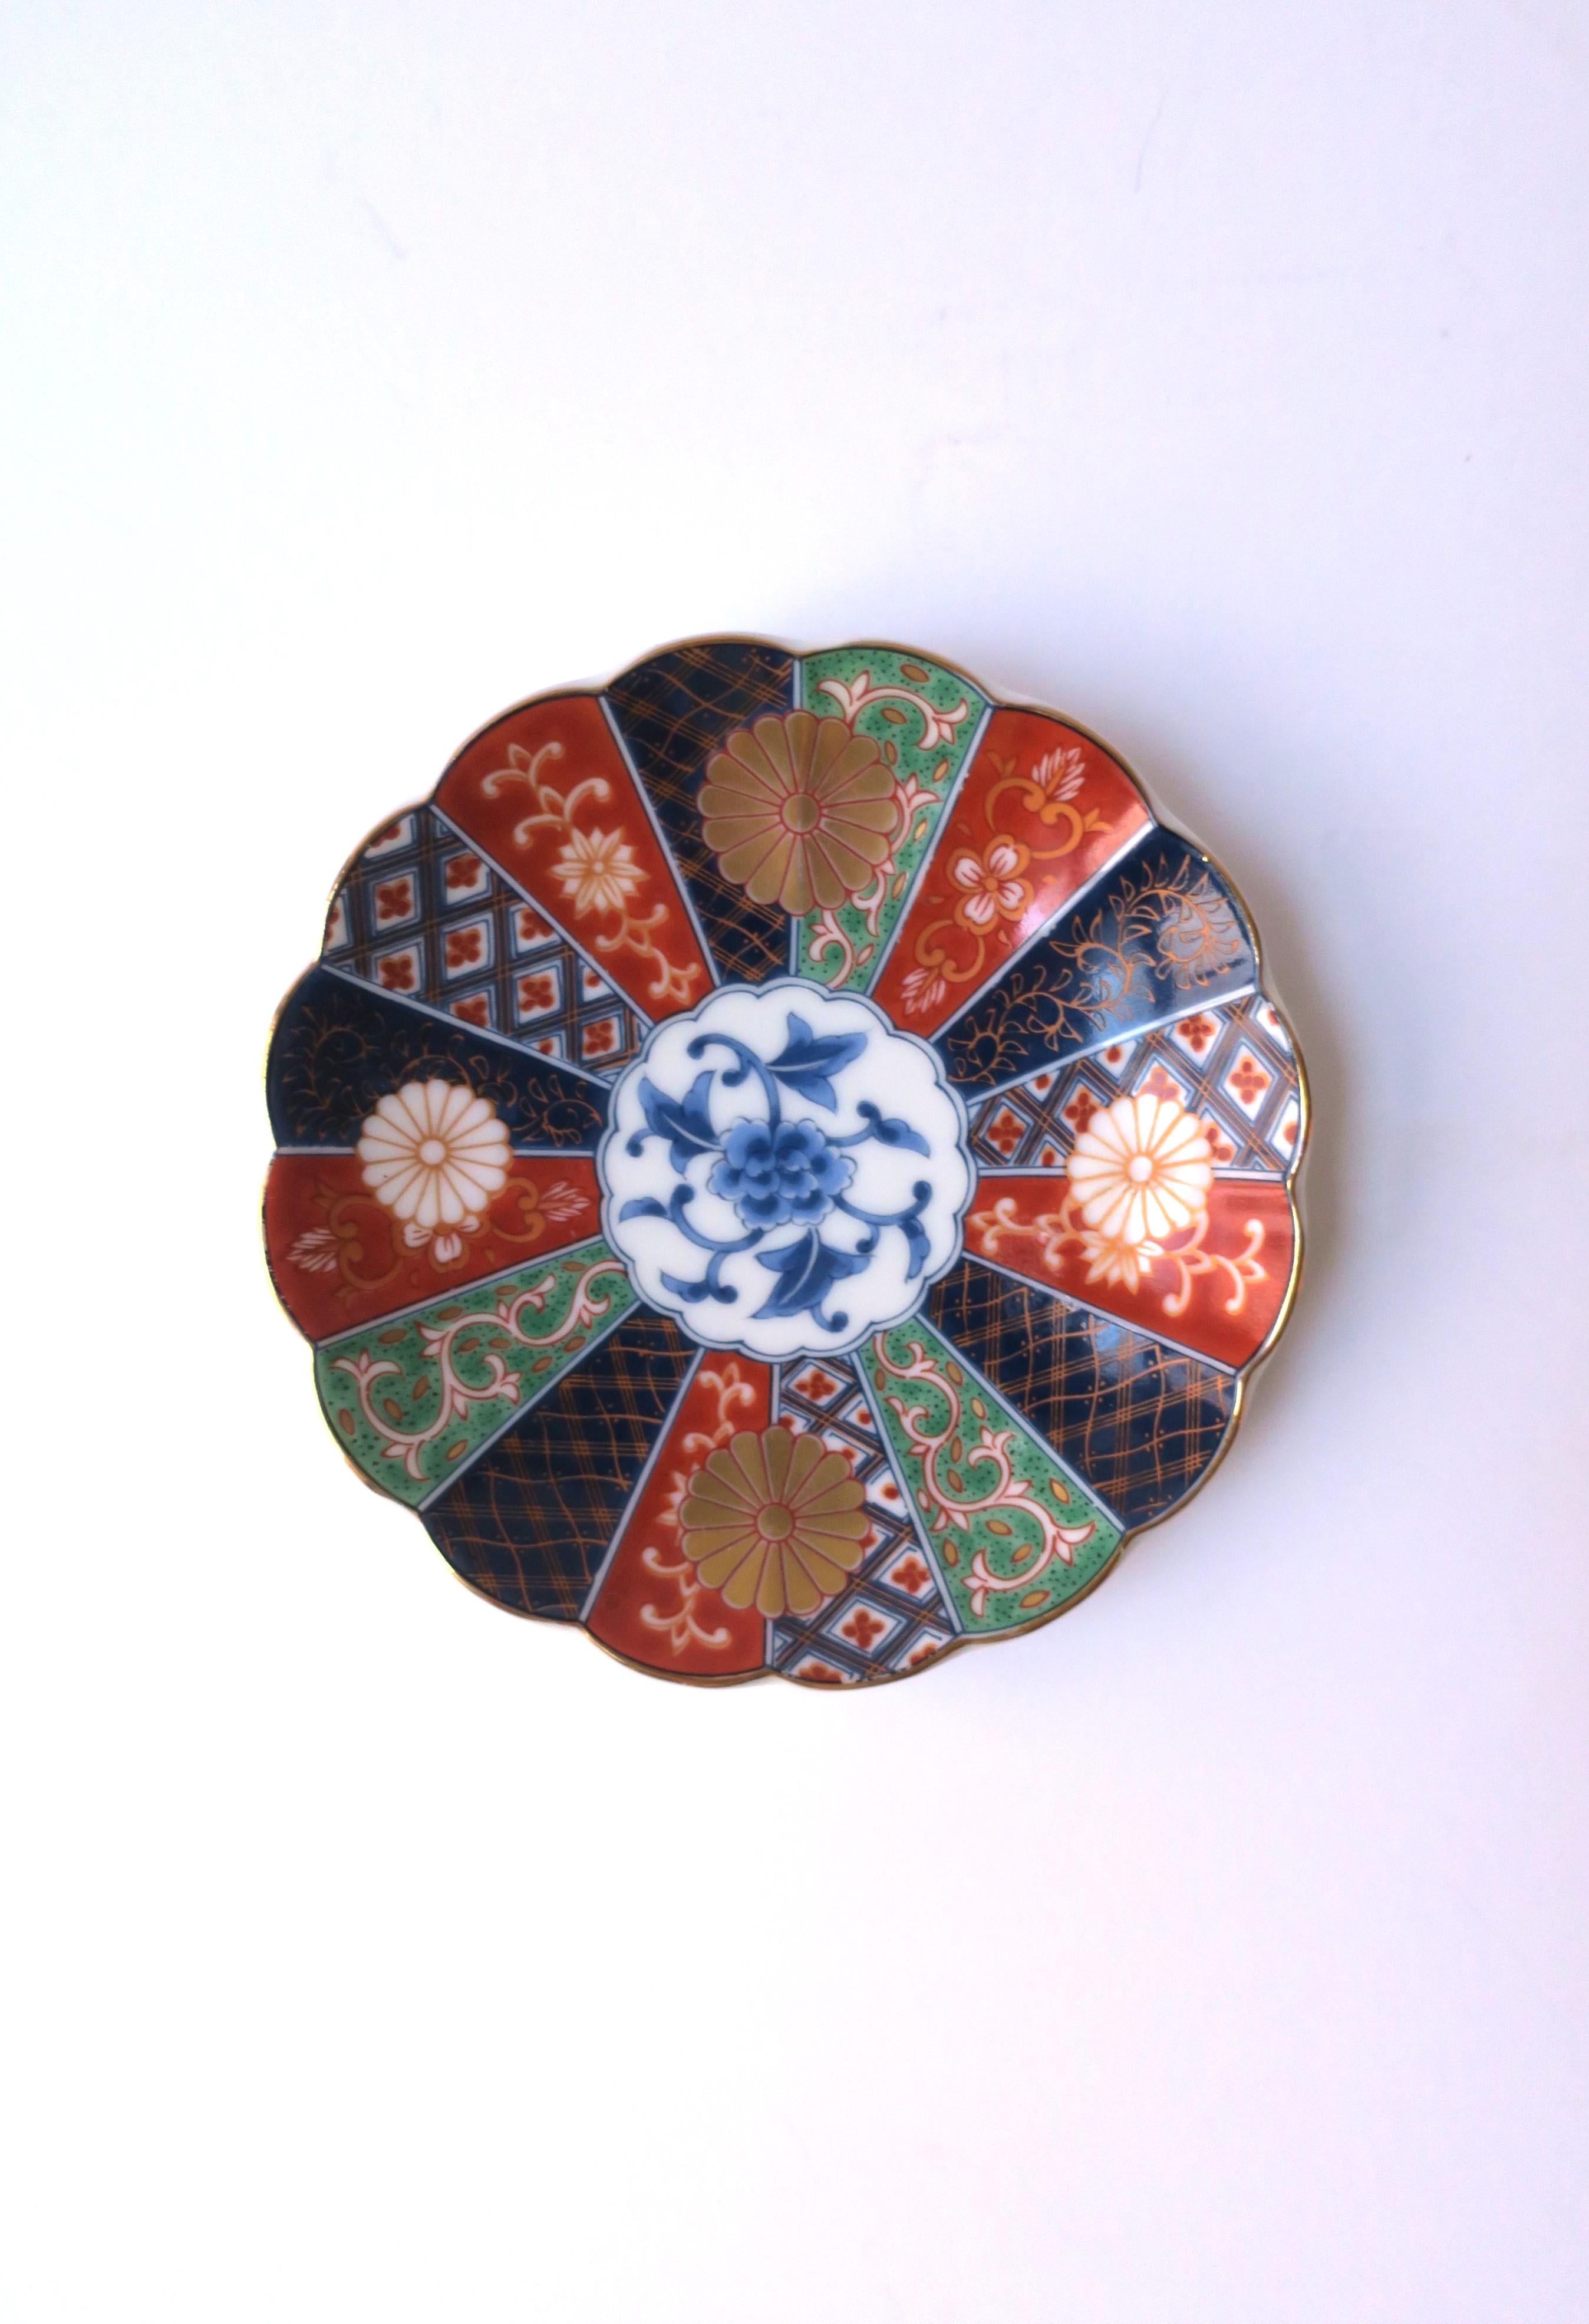 Magnifique plat à bijoux rond en porcelaine, décoré à la main, avec un bord festonné, dans le style anglo-japonais, 1987, États-Unis. Les pièces sont fabriquées au Japon et aux États-Unis. Les couleurs comprennent un fond de porcelaine blanche, le